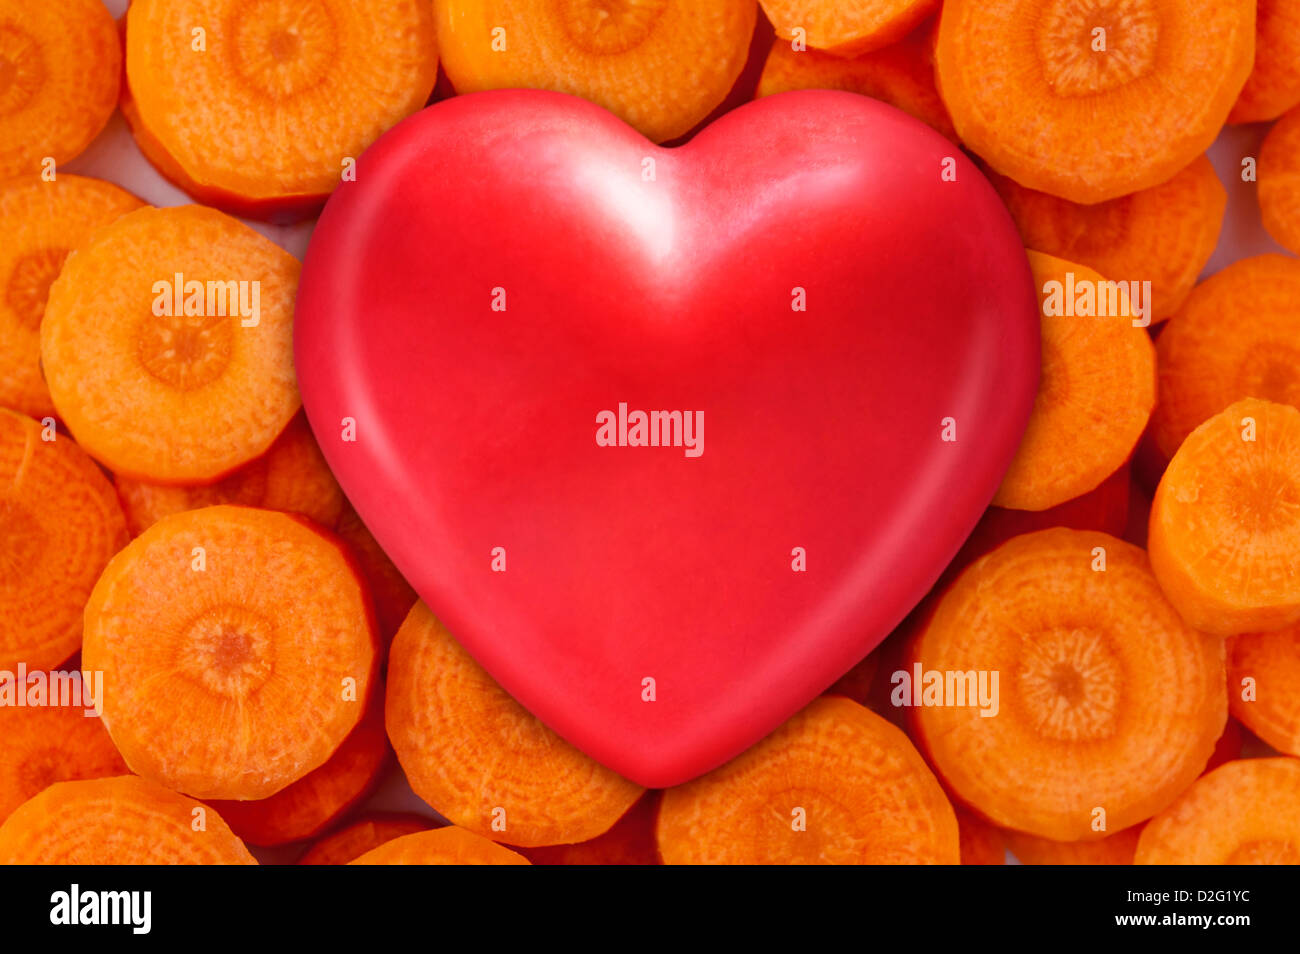 Cibo sano - cuore rosso su le carote fresche per mangiare sano Foto Stock